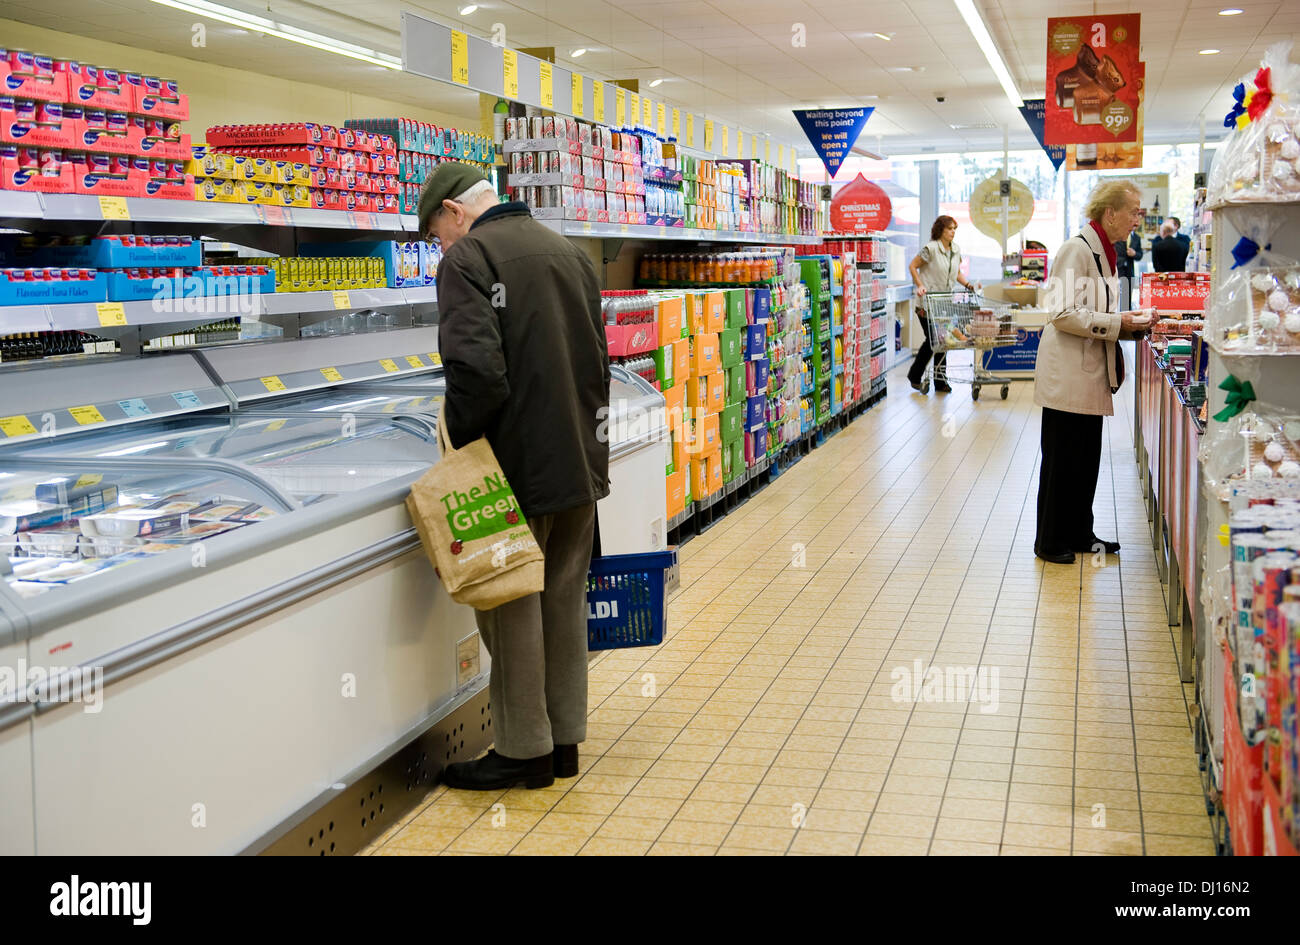 Shopping pour un pensionné dans du budget du Royaume-Uni, supermarché Aldi. Banque D'Images